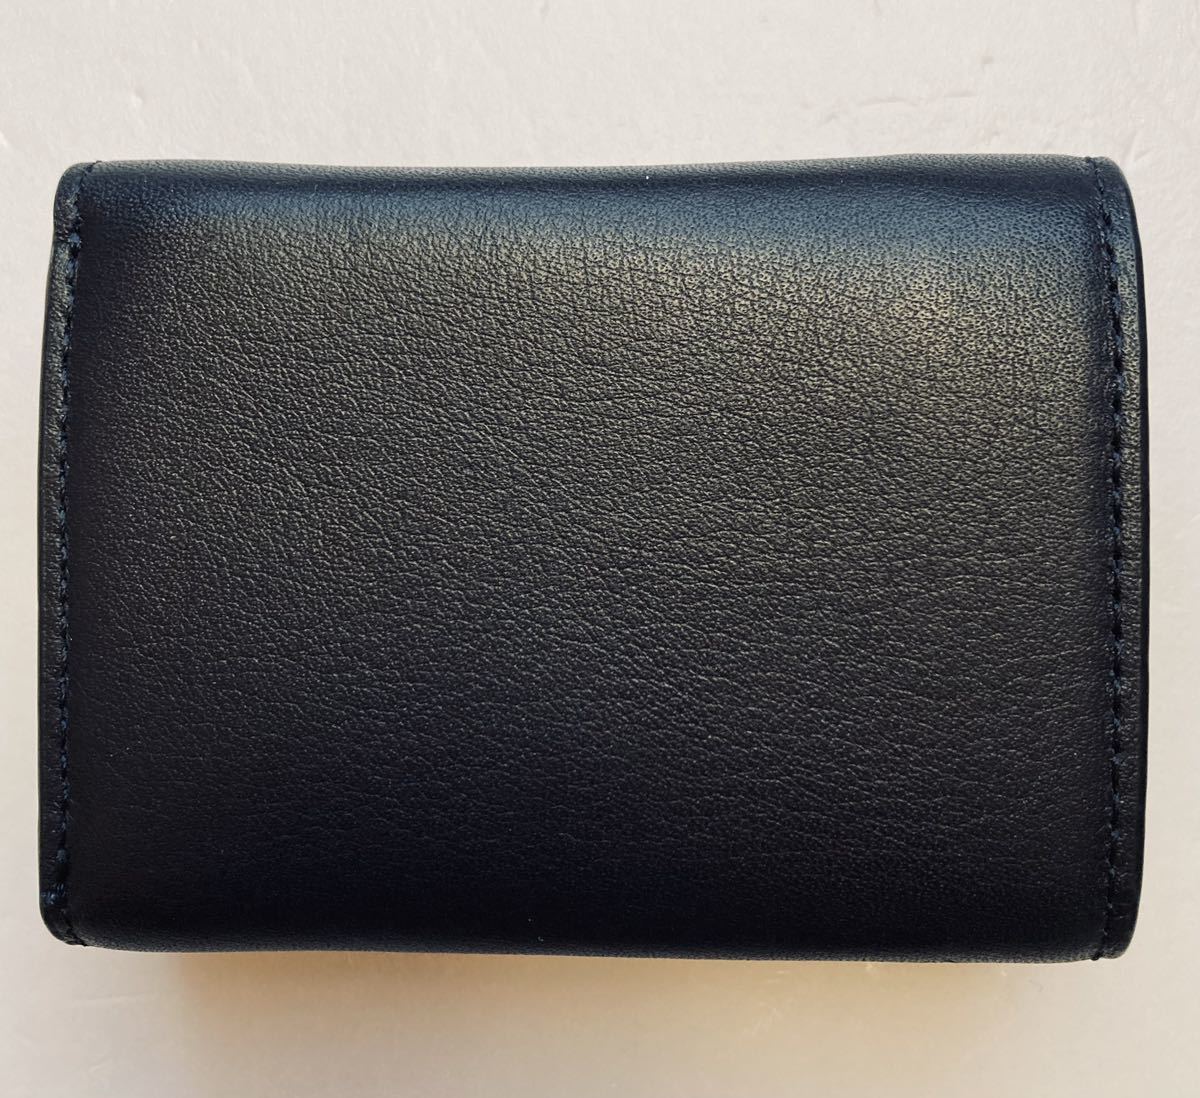  новый товар не использовался *agnes b. Agnes B Mini бумажник 3. складывать кошелек MH19-06 кошелек для мелочи . есть темный темно-синий 